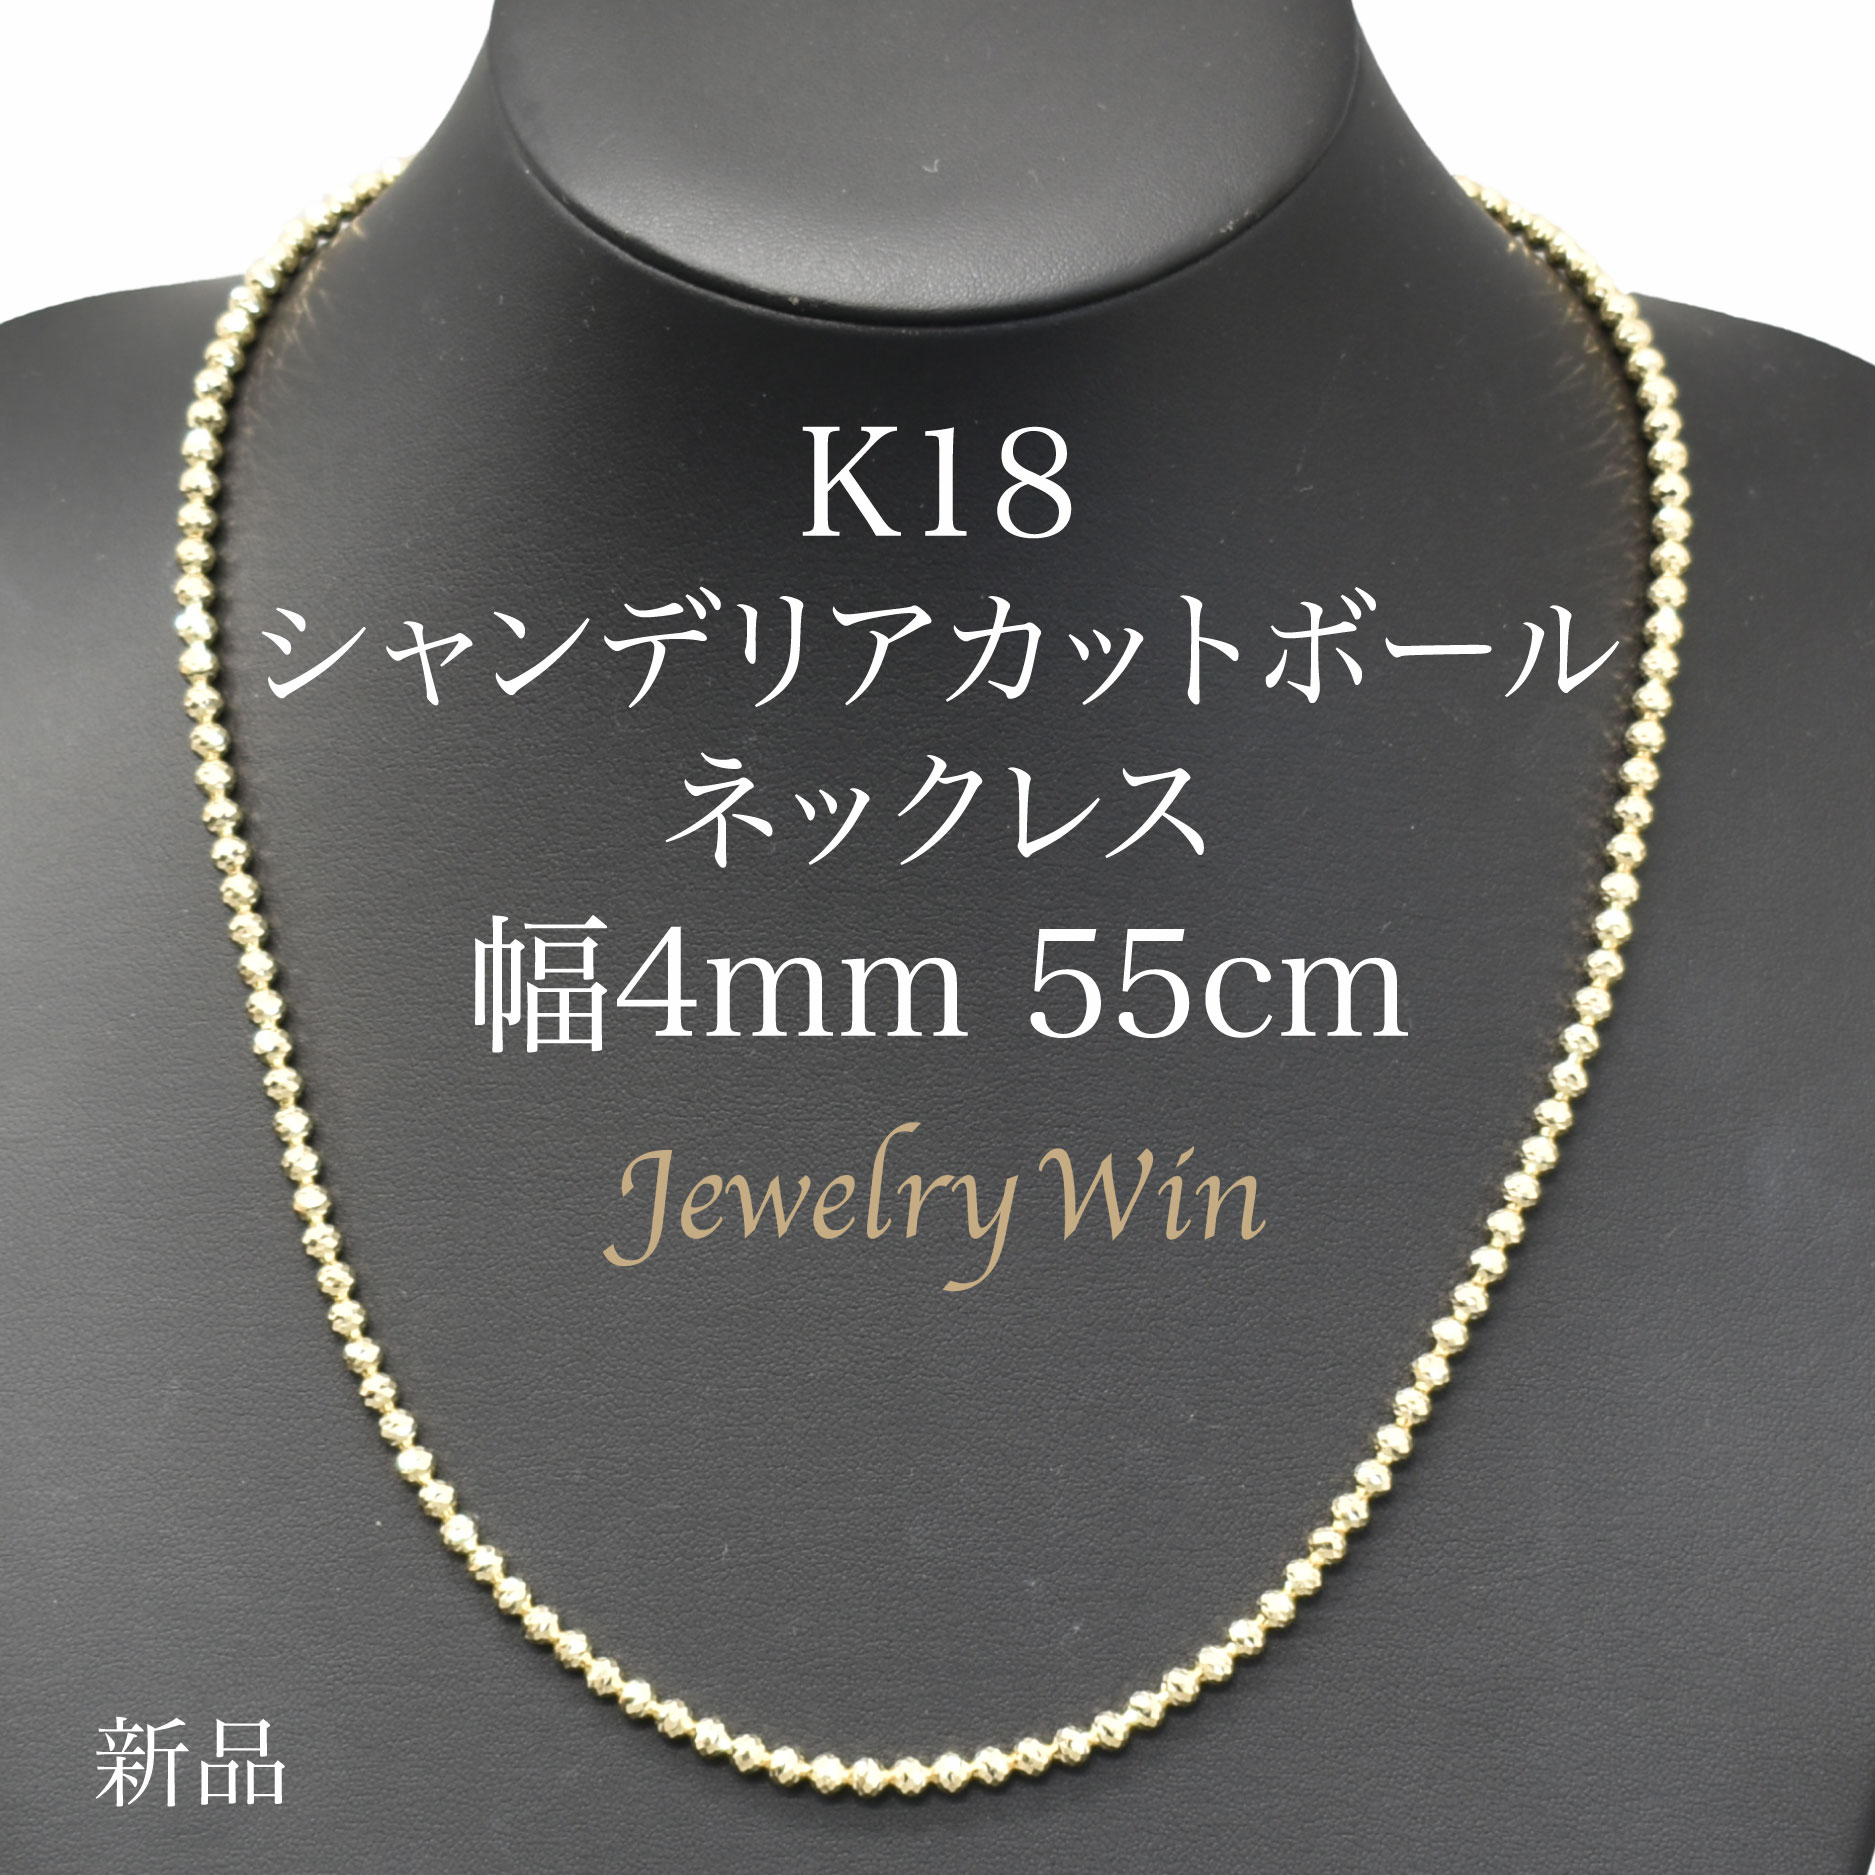 楽天市場】ペンダントトップK18 ダイヤ付 (Type-KD) 中 : Jewelry Win 